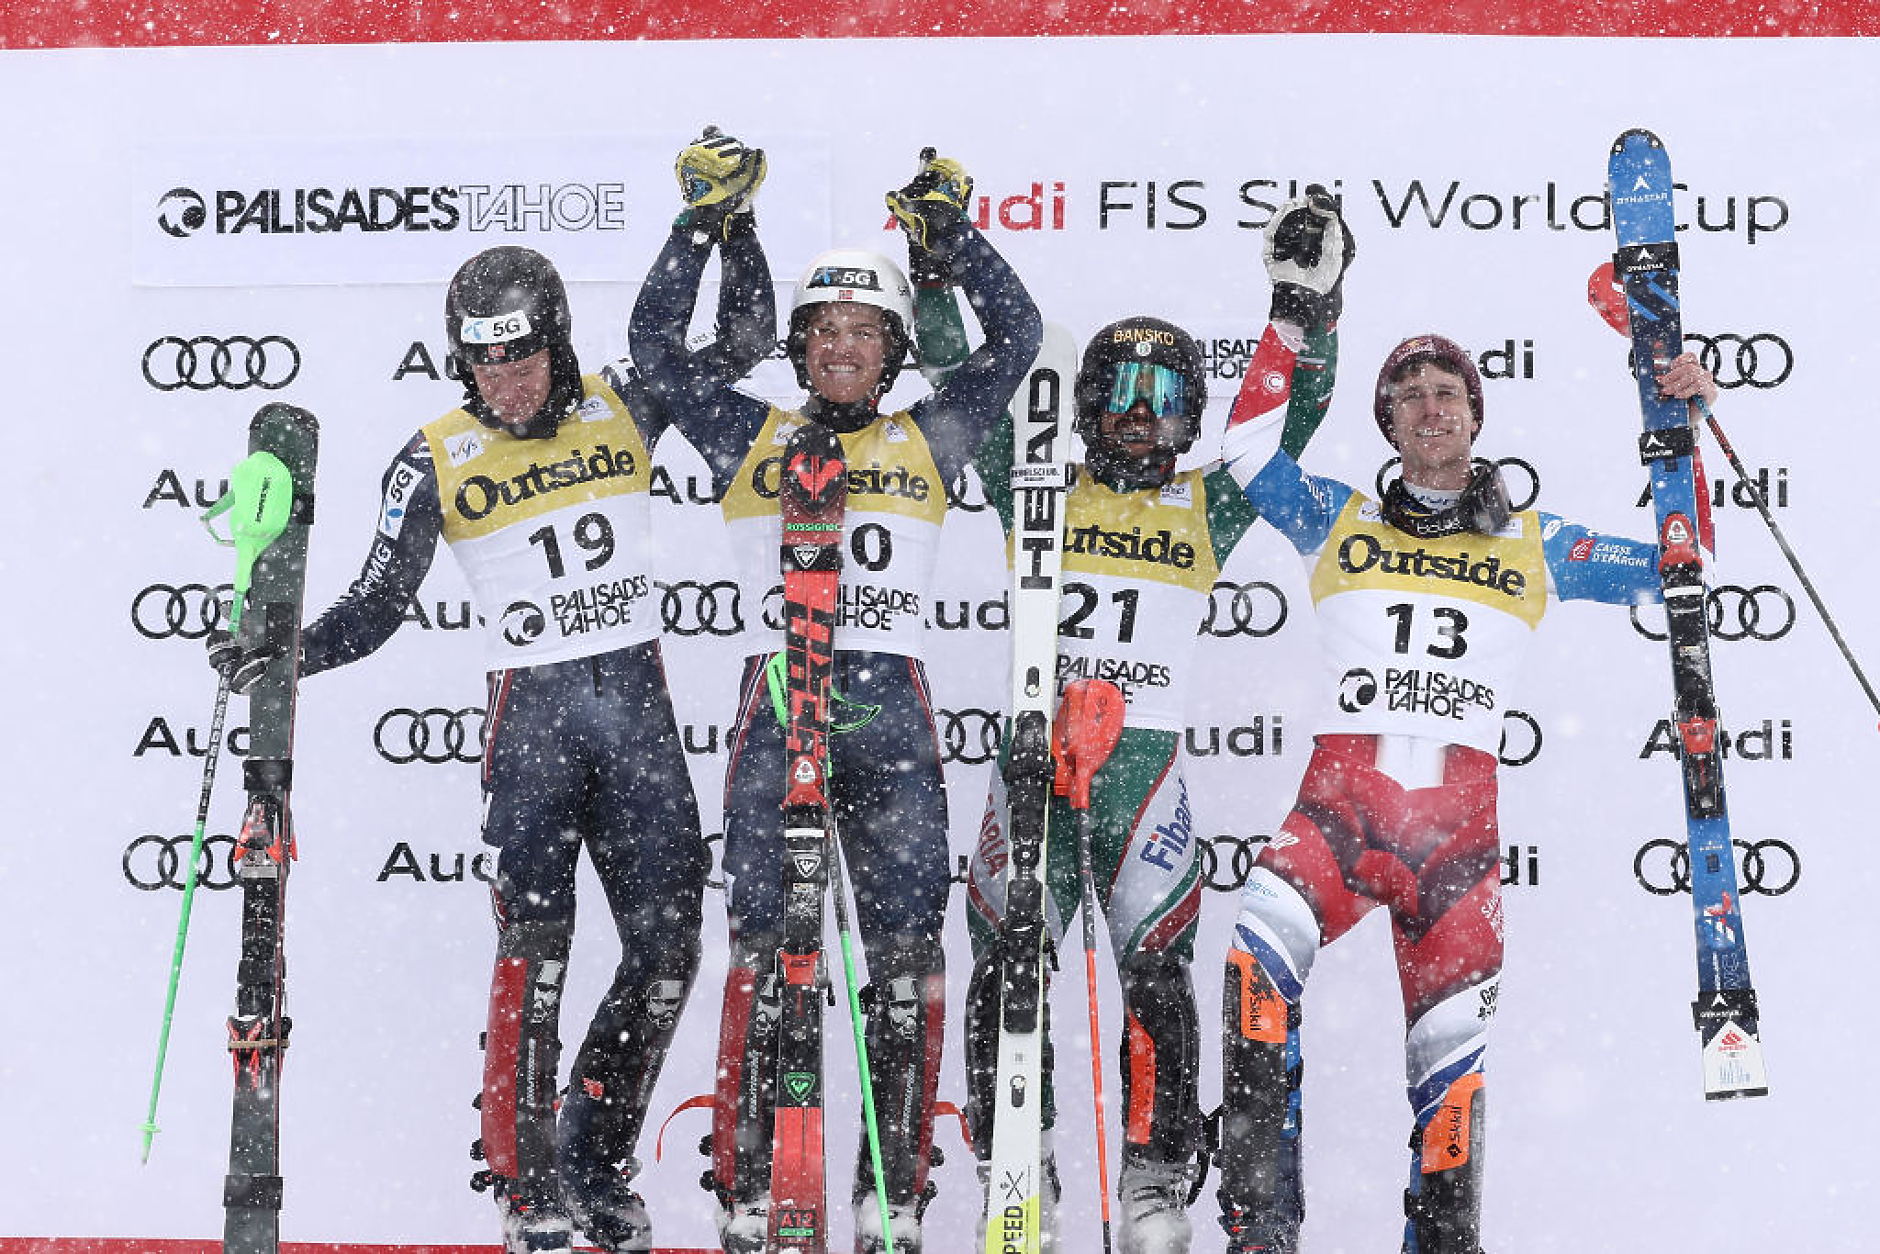 След 39 години българин отново с медал в Световната купа по ски